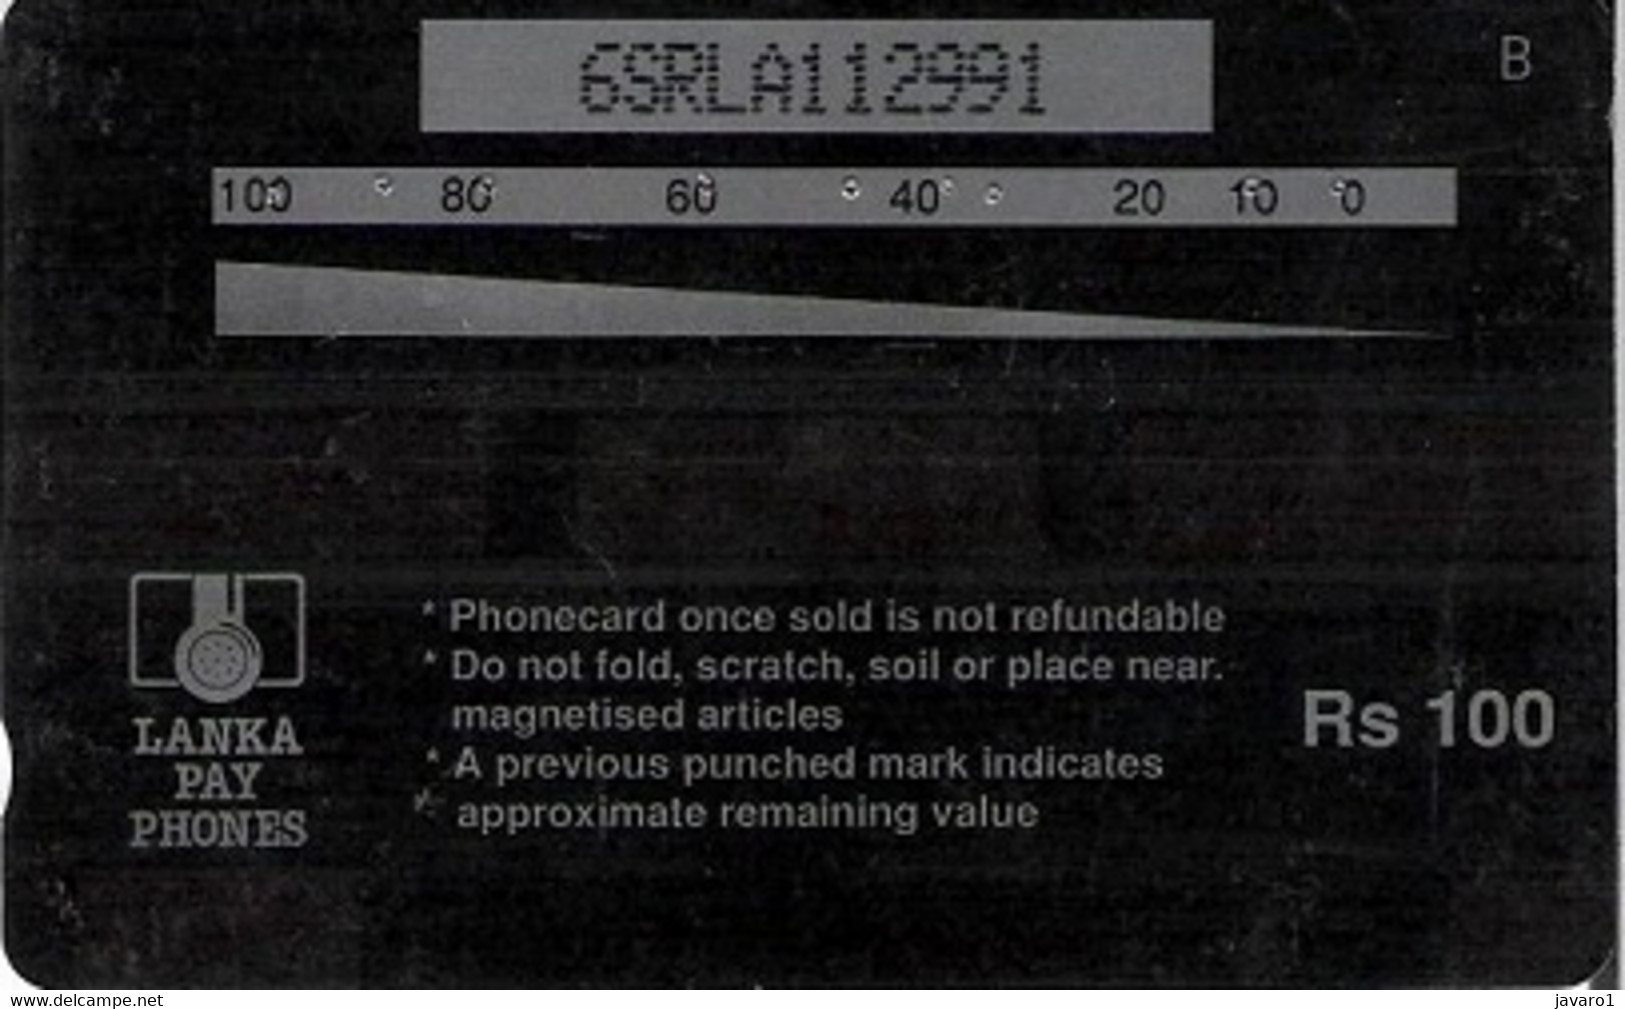 SRILANKA : 06A Rs100 Calendar 1994 + Phonecabin MINT - Sri Lanka (Ceylon)